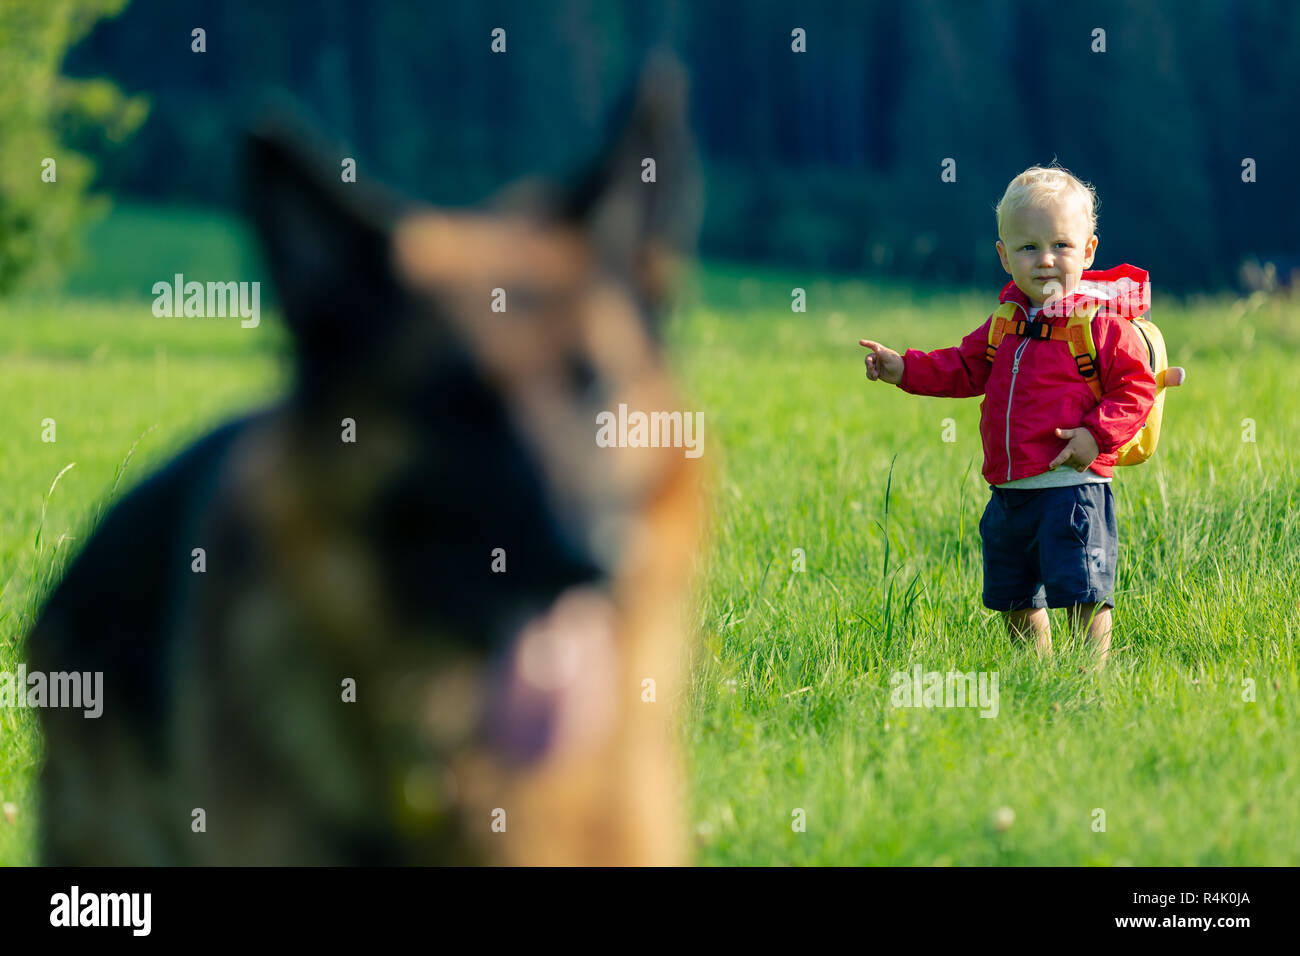 Baby Boy spielen mit Hund auf der grünen Wiese. Junge Kind auf Urlaub Wandern. Inspirierende Reise- und Tourismus-Konzept. Stockfoto